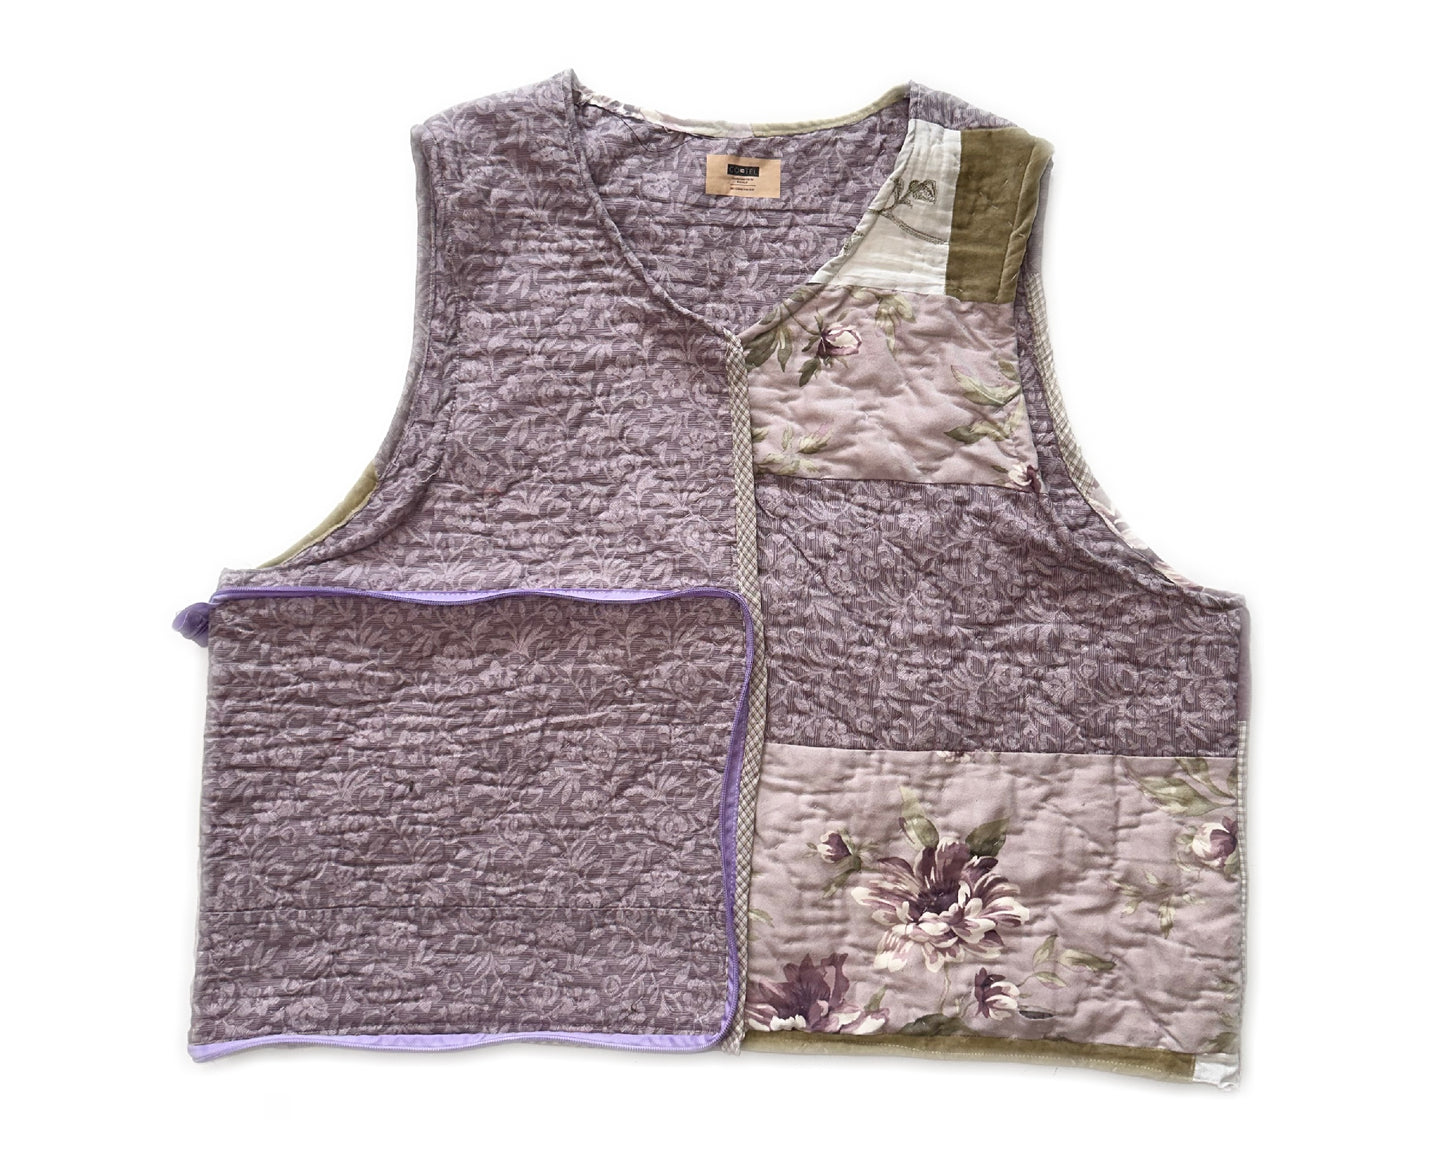 1of1 Lavender Quilted Patchwork Bag Vest